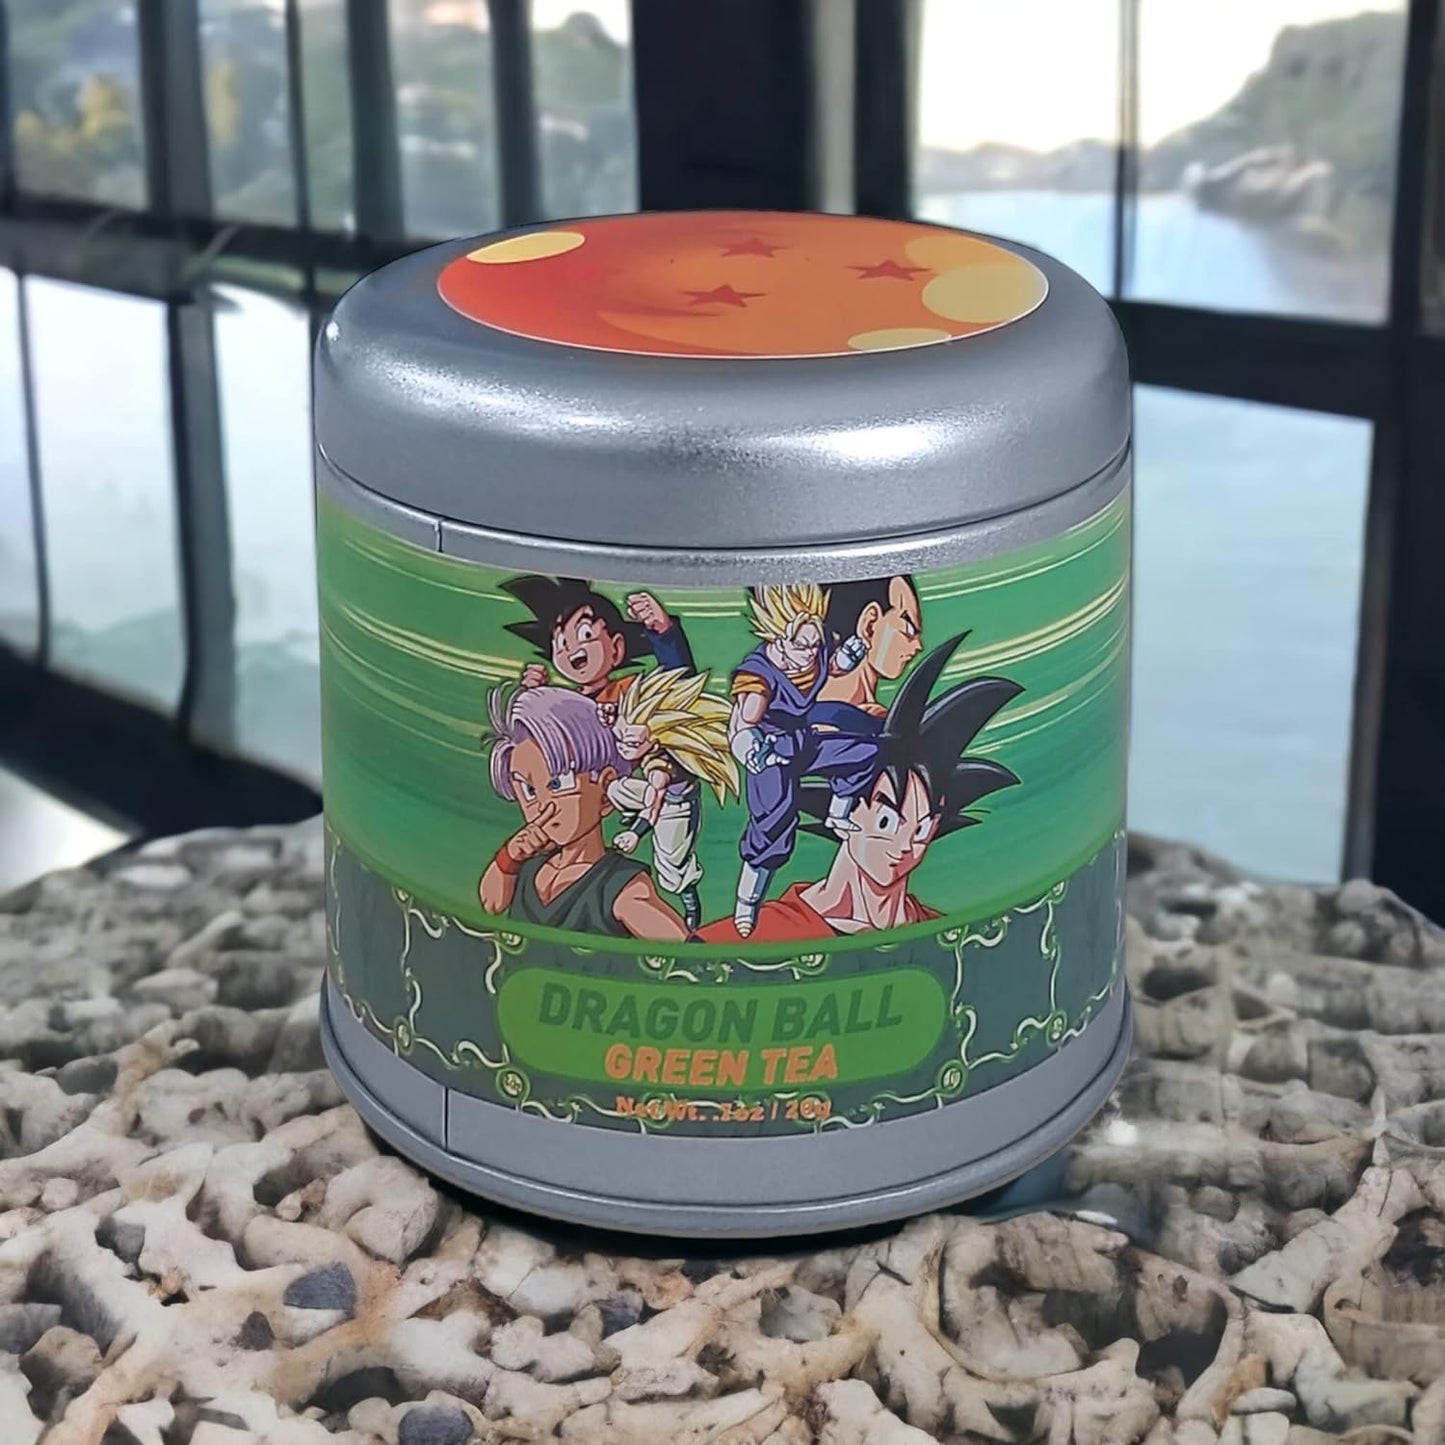 Dragonball Z Energy Green Tea Collectible Tin, 10 Total Tea Bags